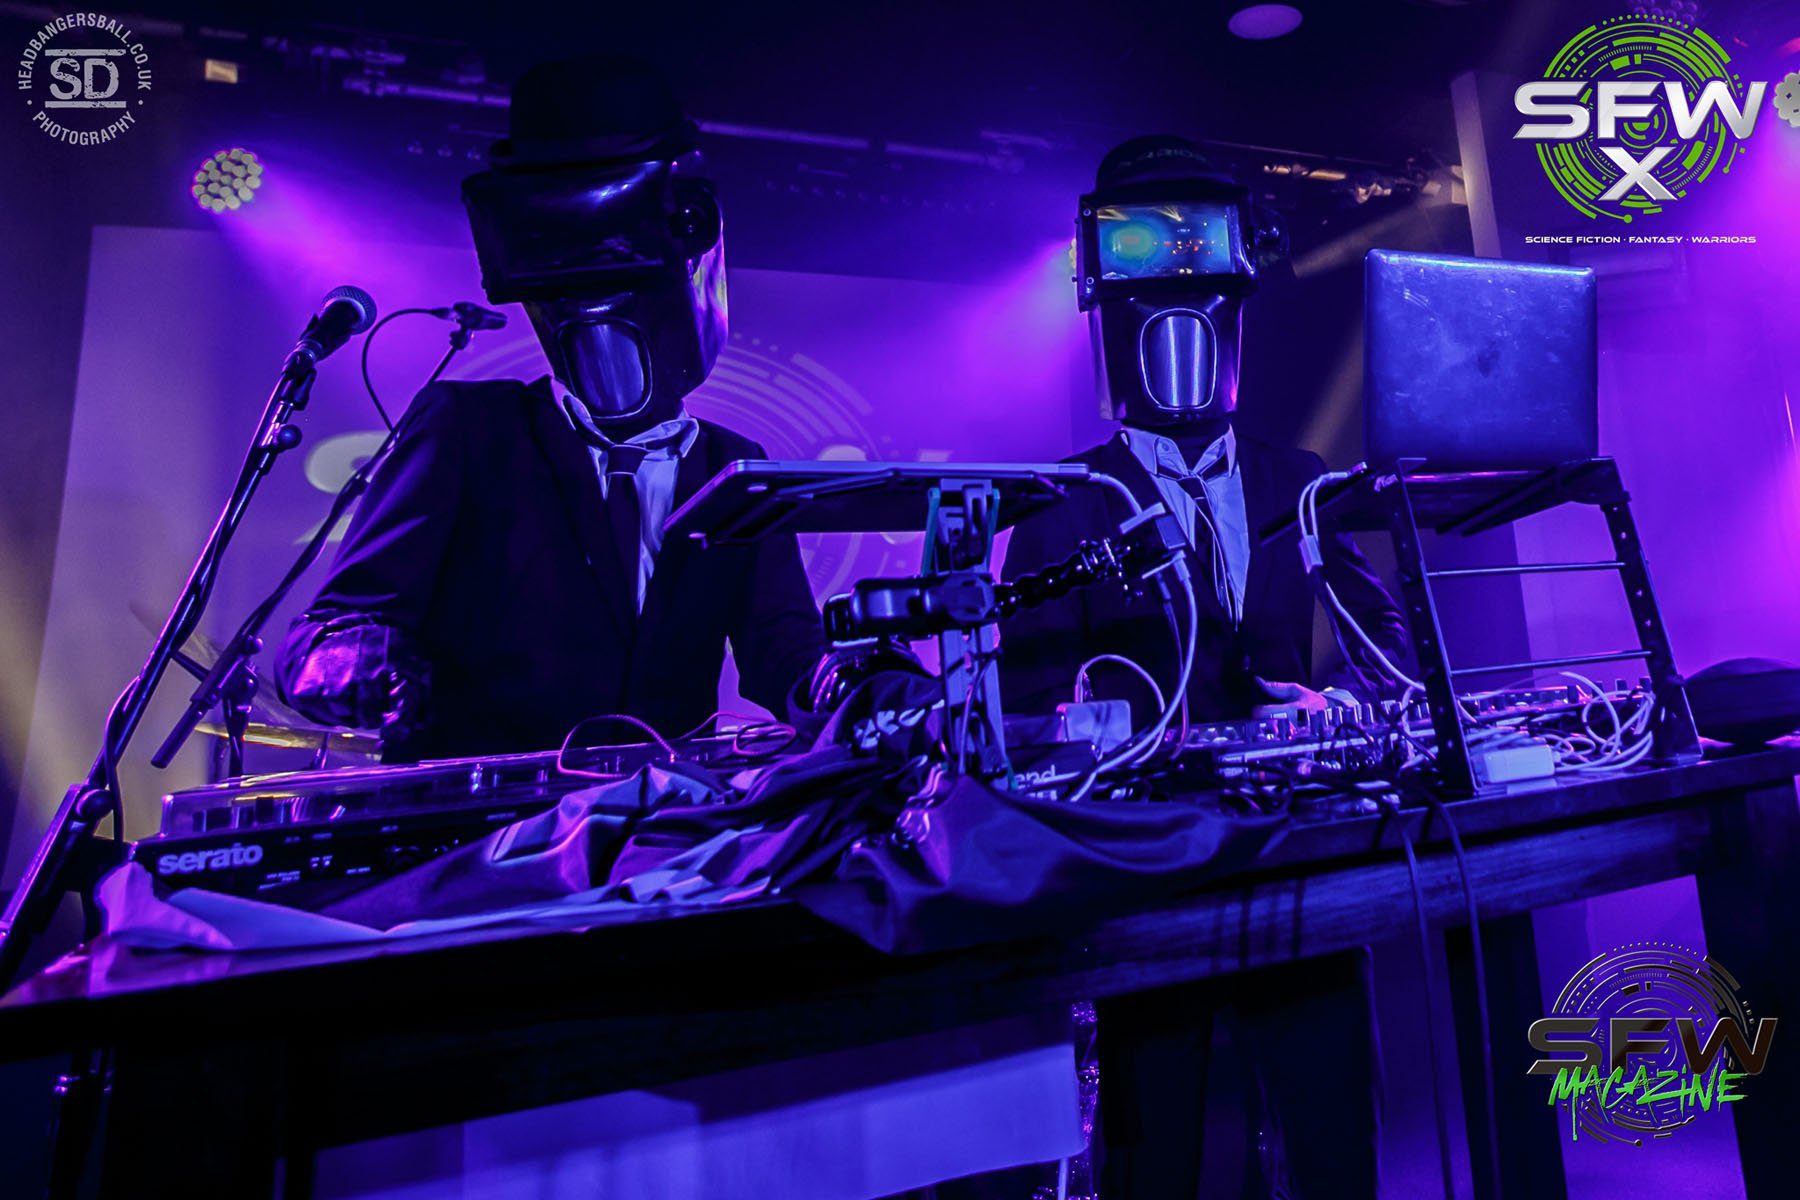 futuristic DJ